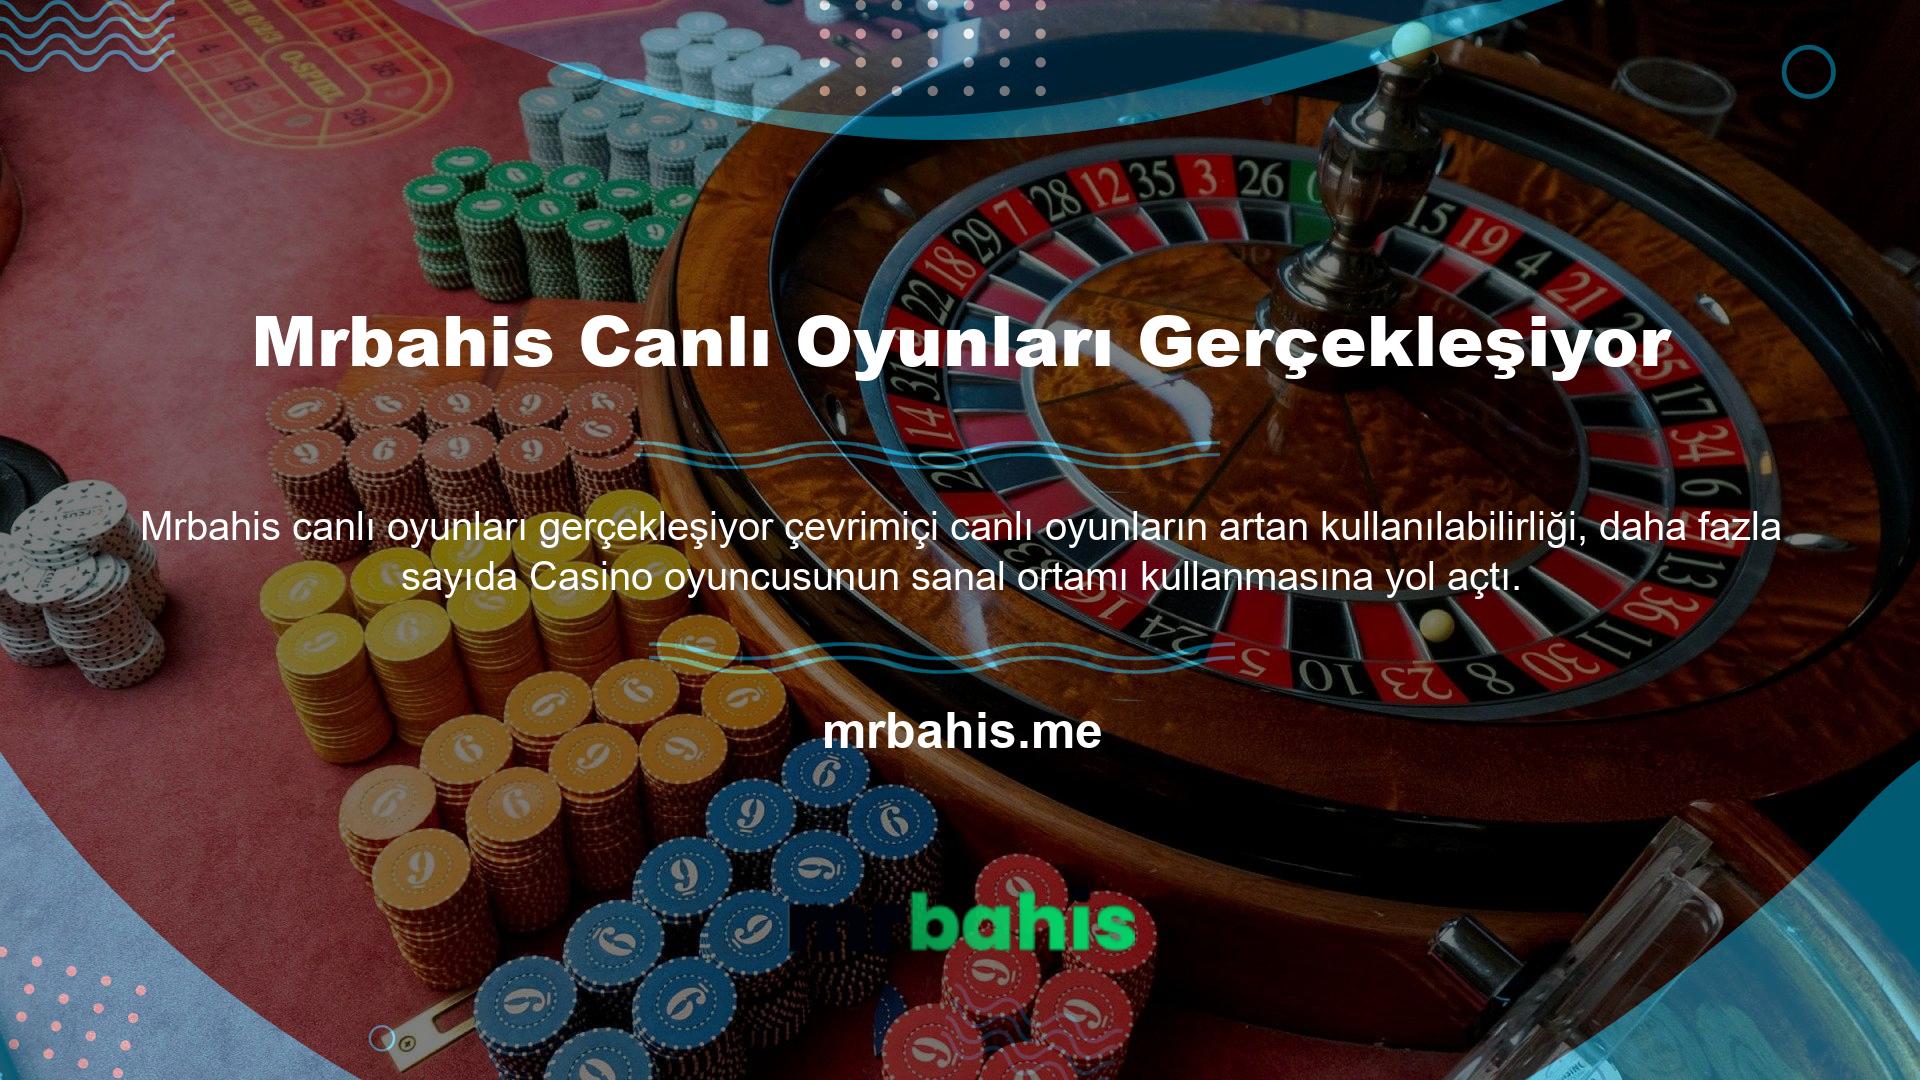 Canlı oyunlara Türkiye'ye açık Casino platformlarından erişilebilmektedir